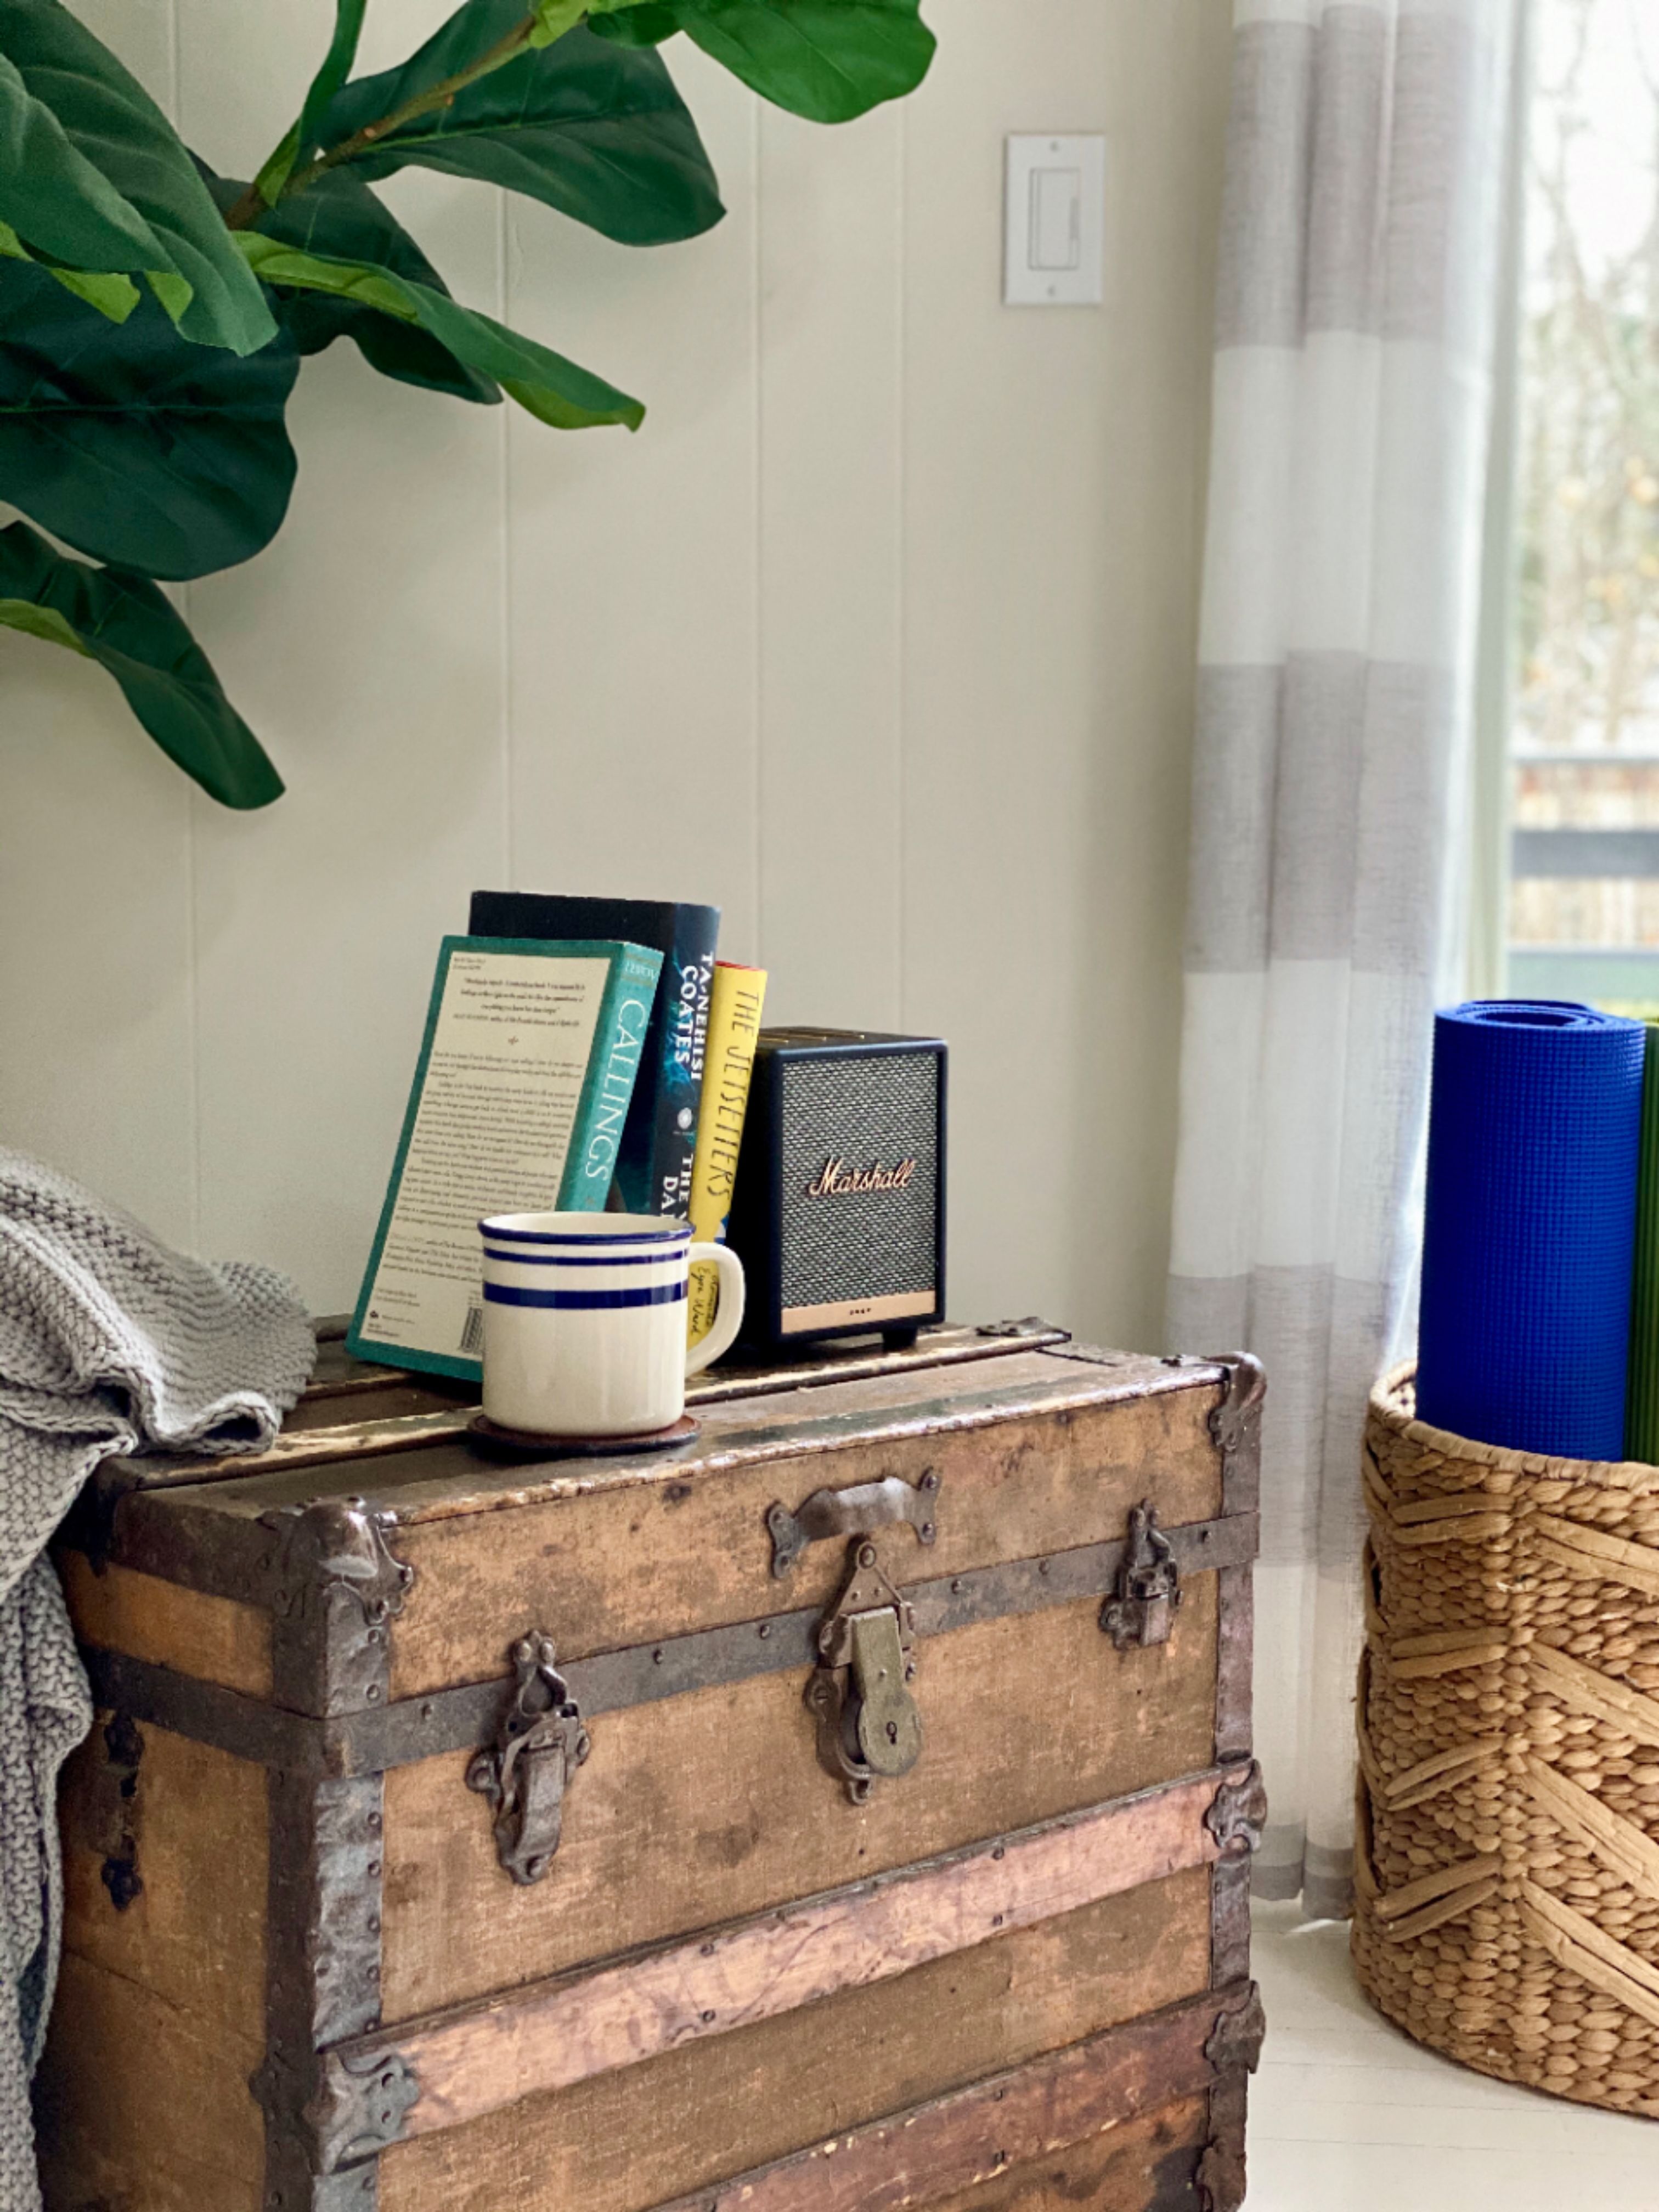 Amazon Buy: Uxbridge Speaker Best Marshall Smart Alexa with 1005605 Black